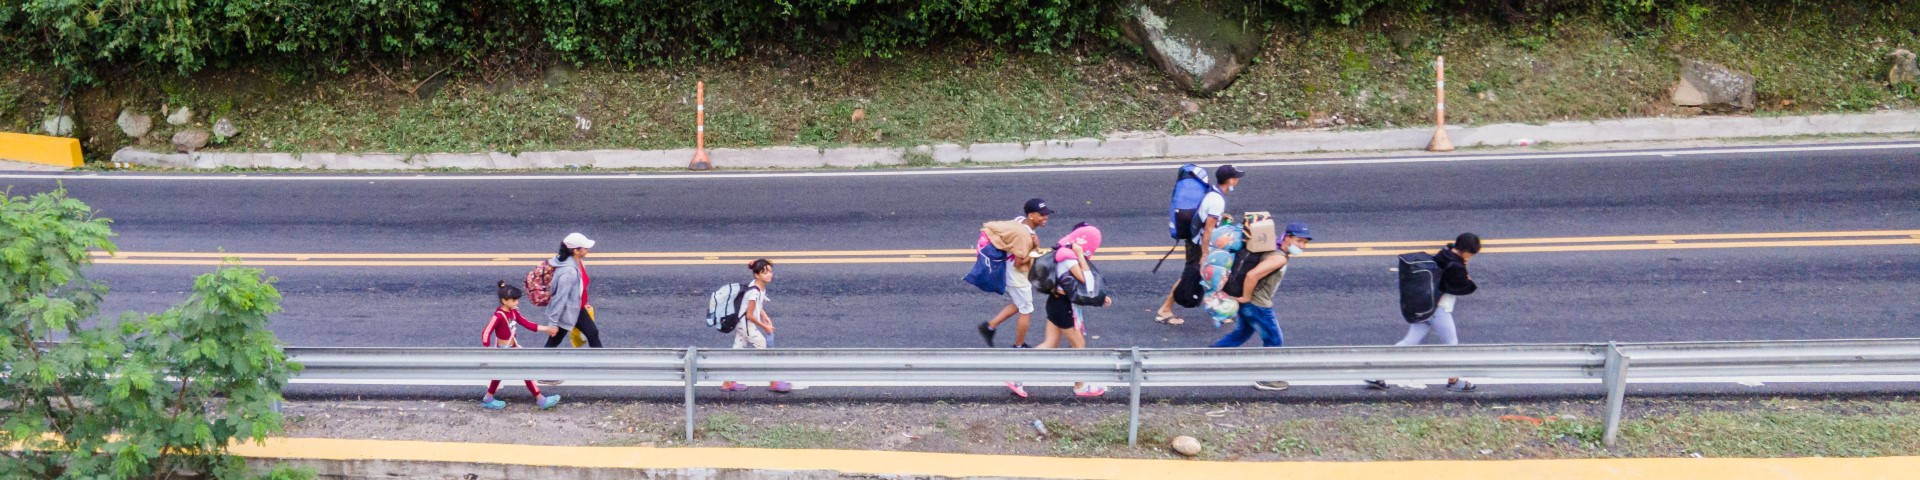 Menschen auf der Flucht laufen auf einer Straße.